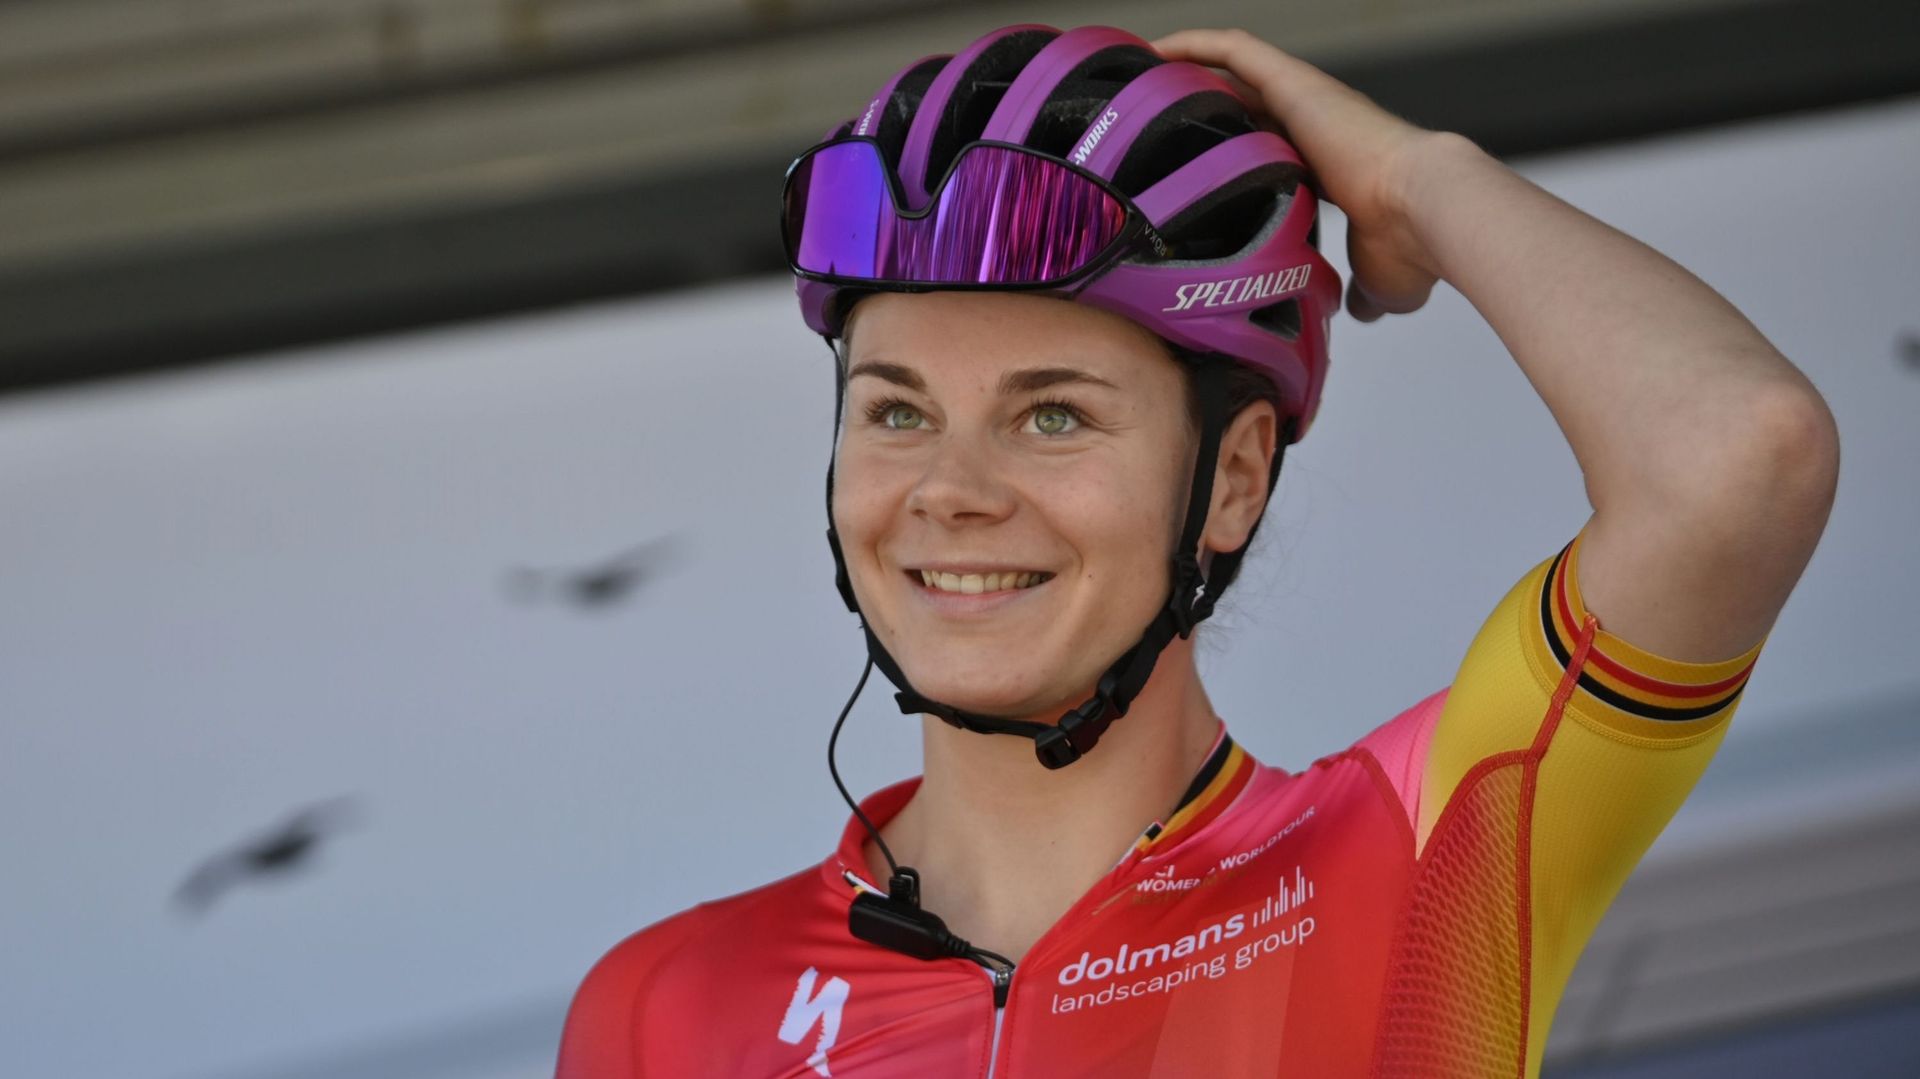 SD Worx a révélé sa sélection en vue du Tour de France Femmes cycliste qui se déroulera du 24 au 31 juillet. Lotte Kopecky, qui ambitionne une victoire d’étape et le maillot vert, sera entourée des Néerlandaises Demi Vollering et Chantal van den Broek-Bla